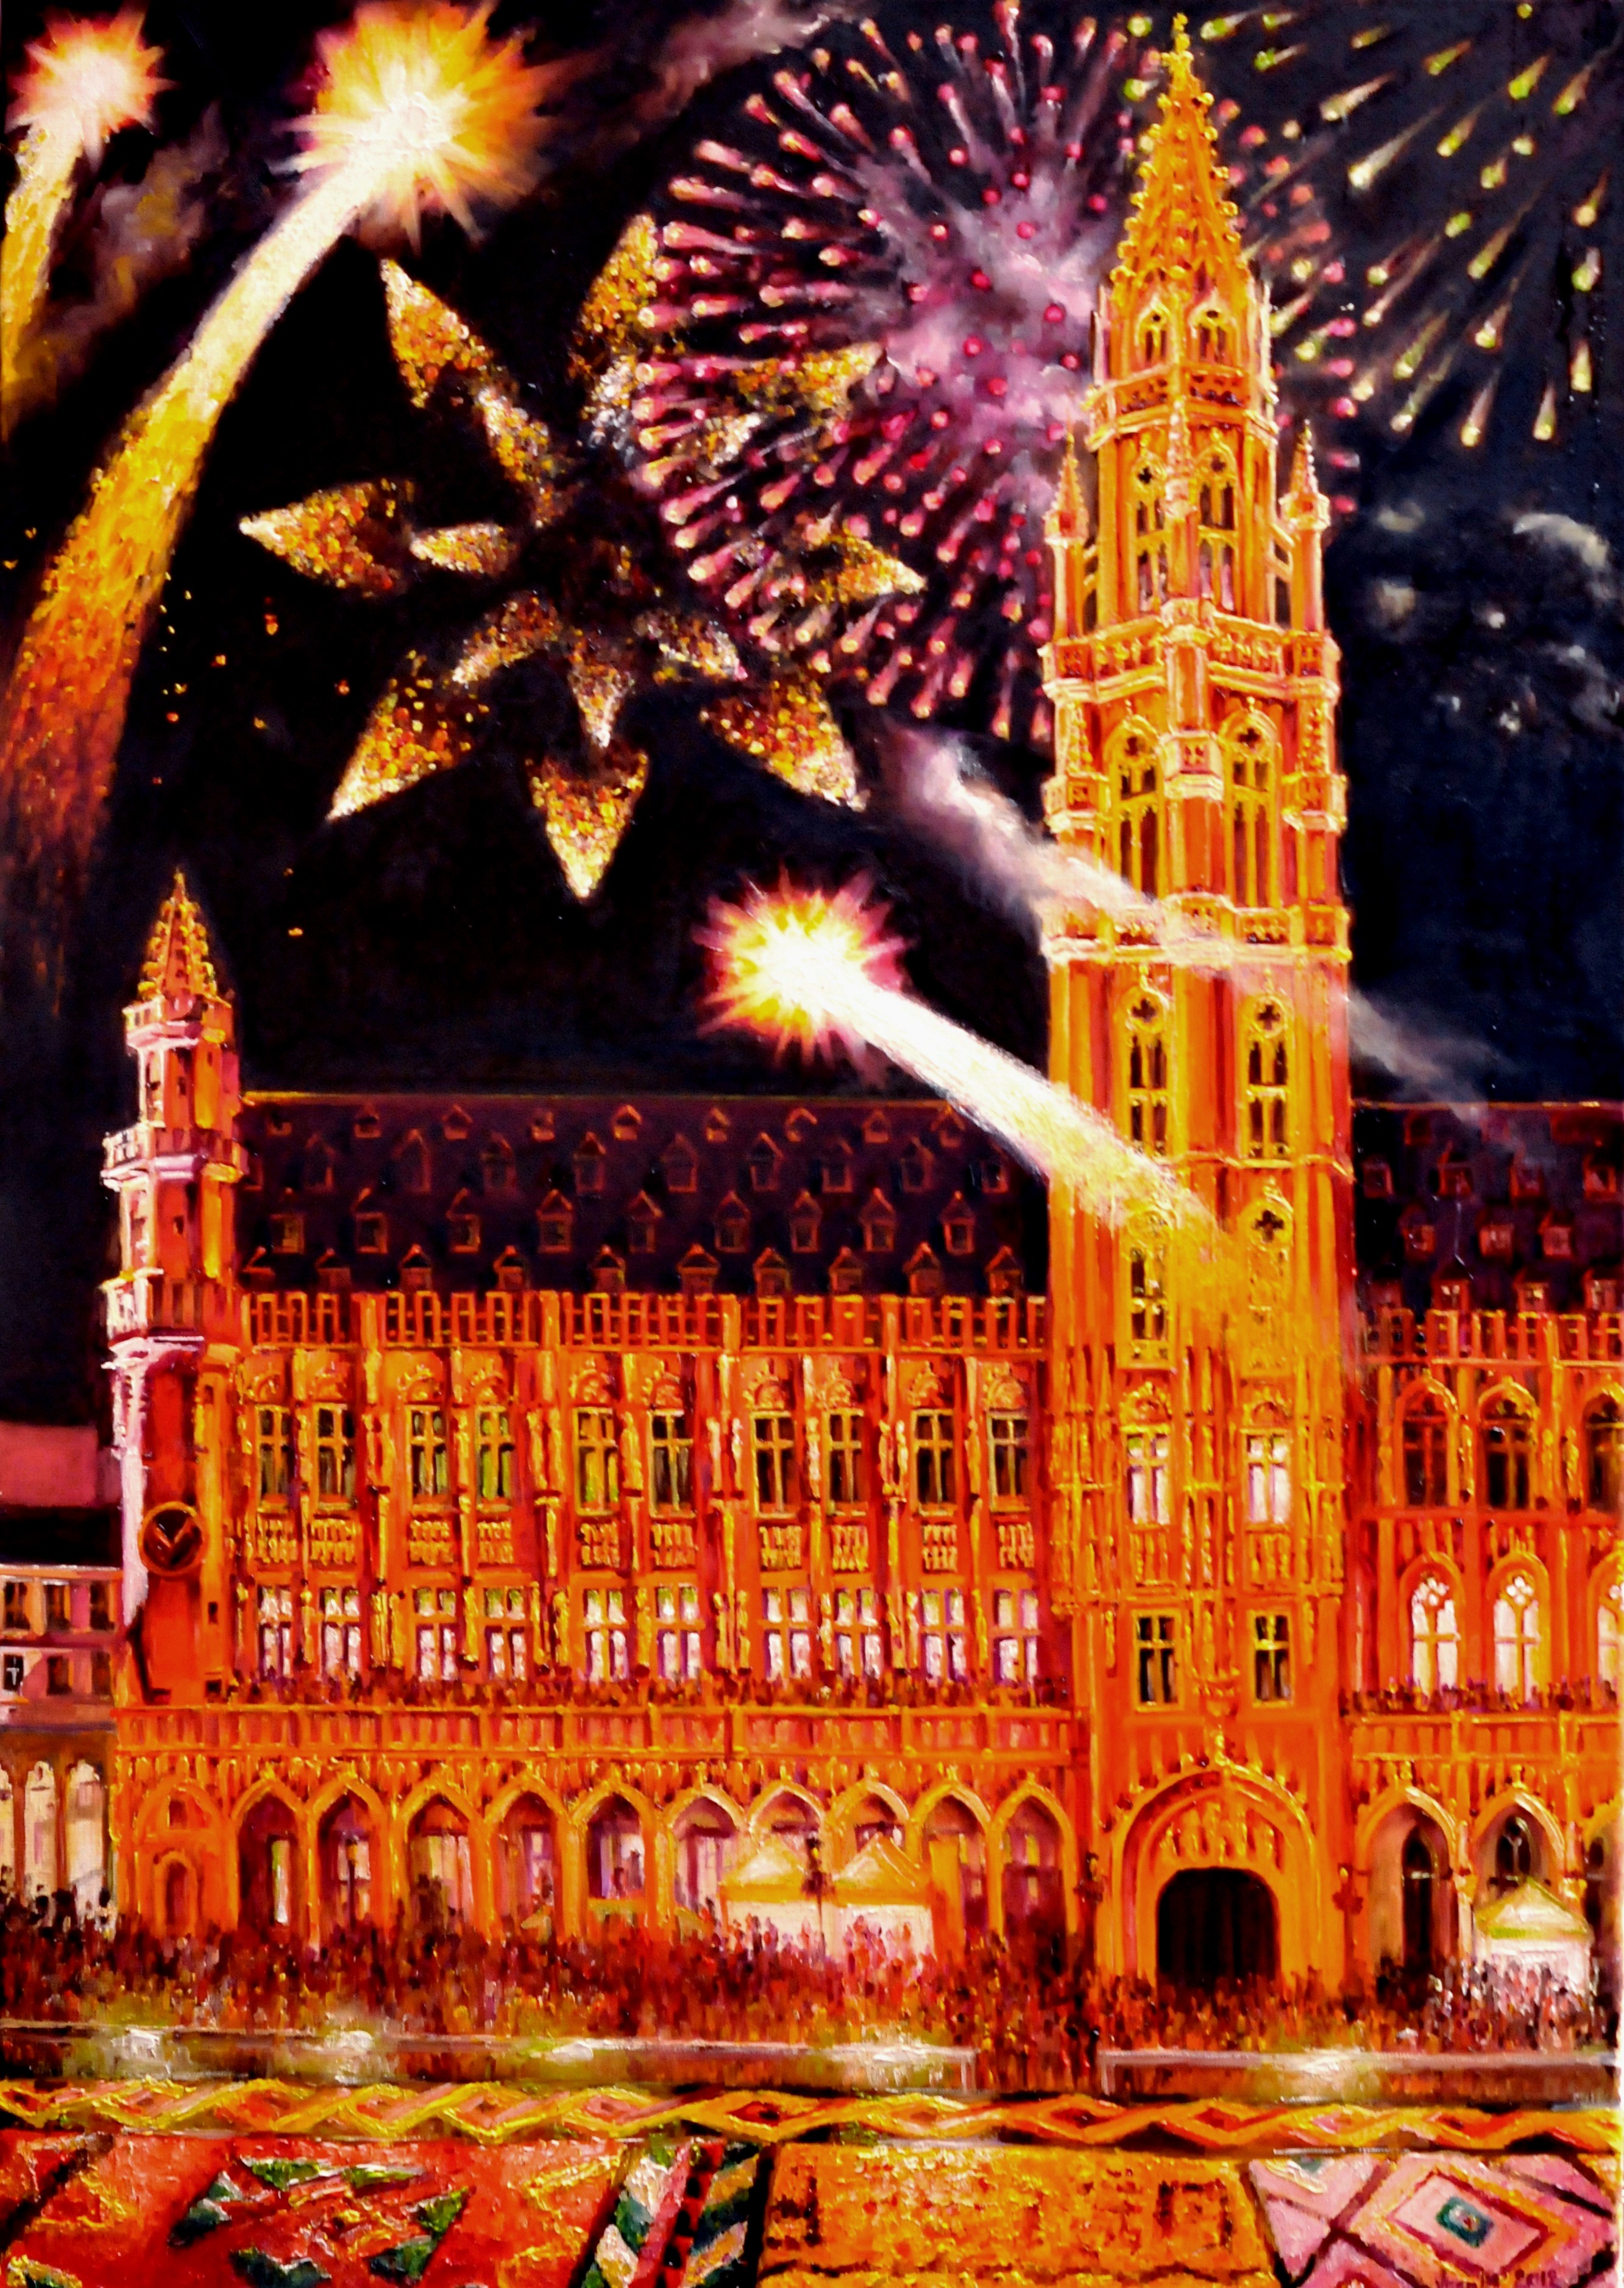 Vuurwerk op de Grote Markt Brussel, België | Olieverf op linnen | Jaar: 2012 | Afmetingen: 100x70cm